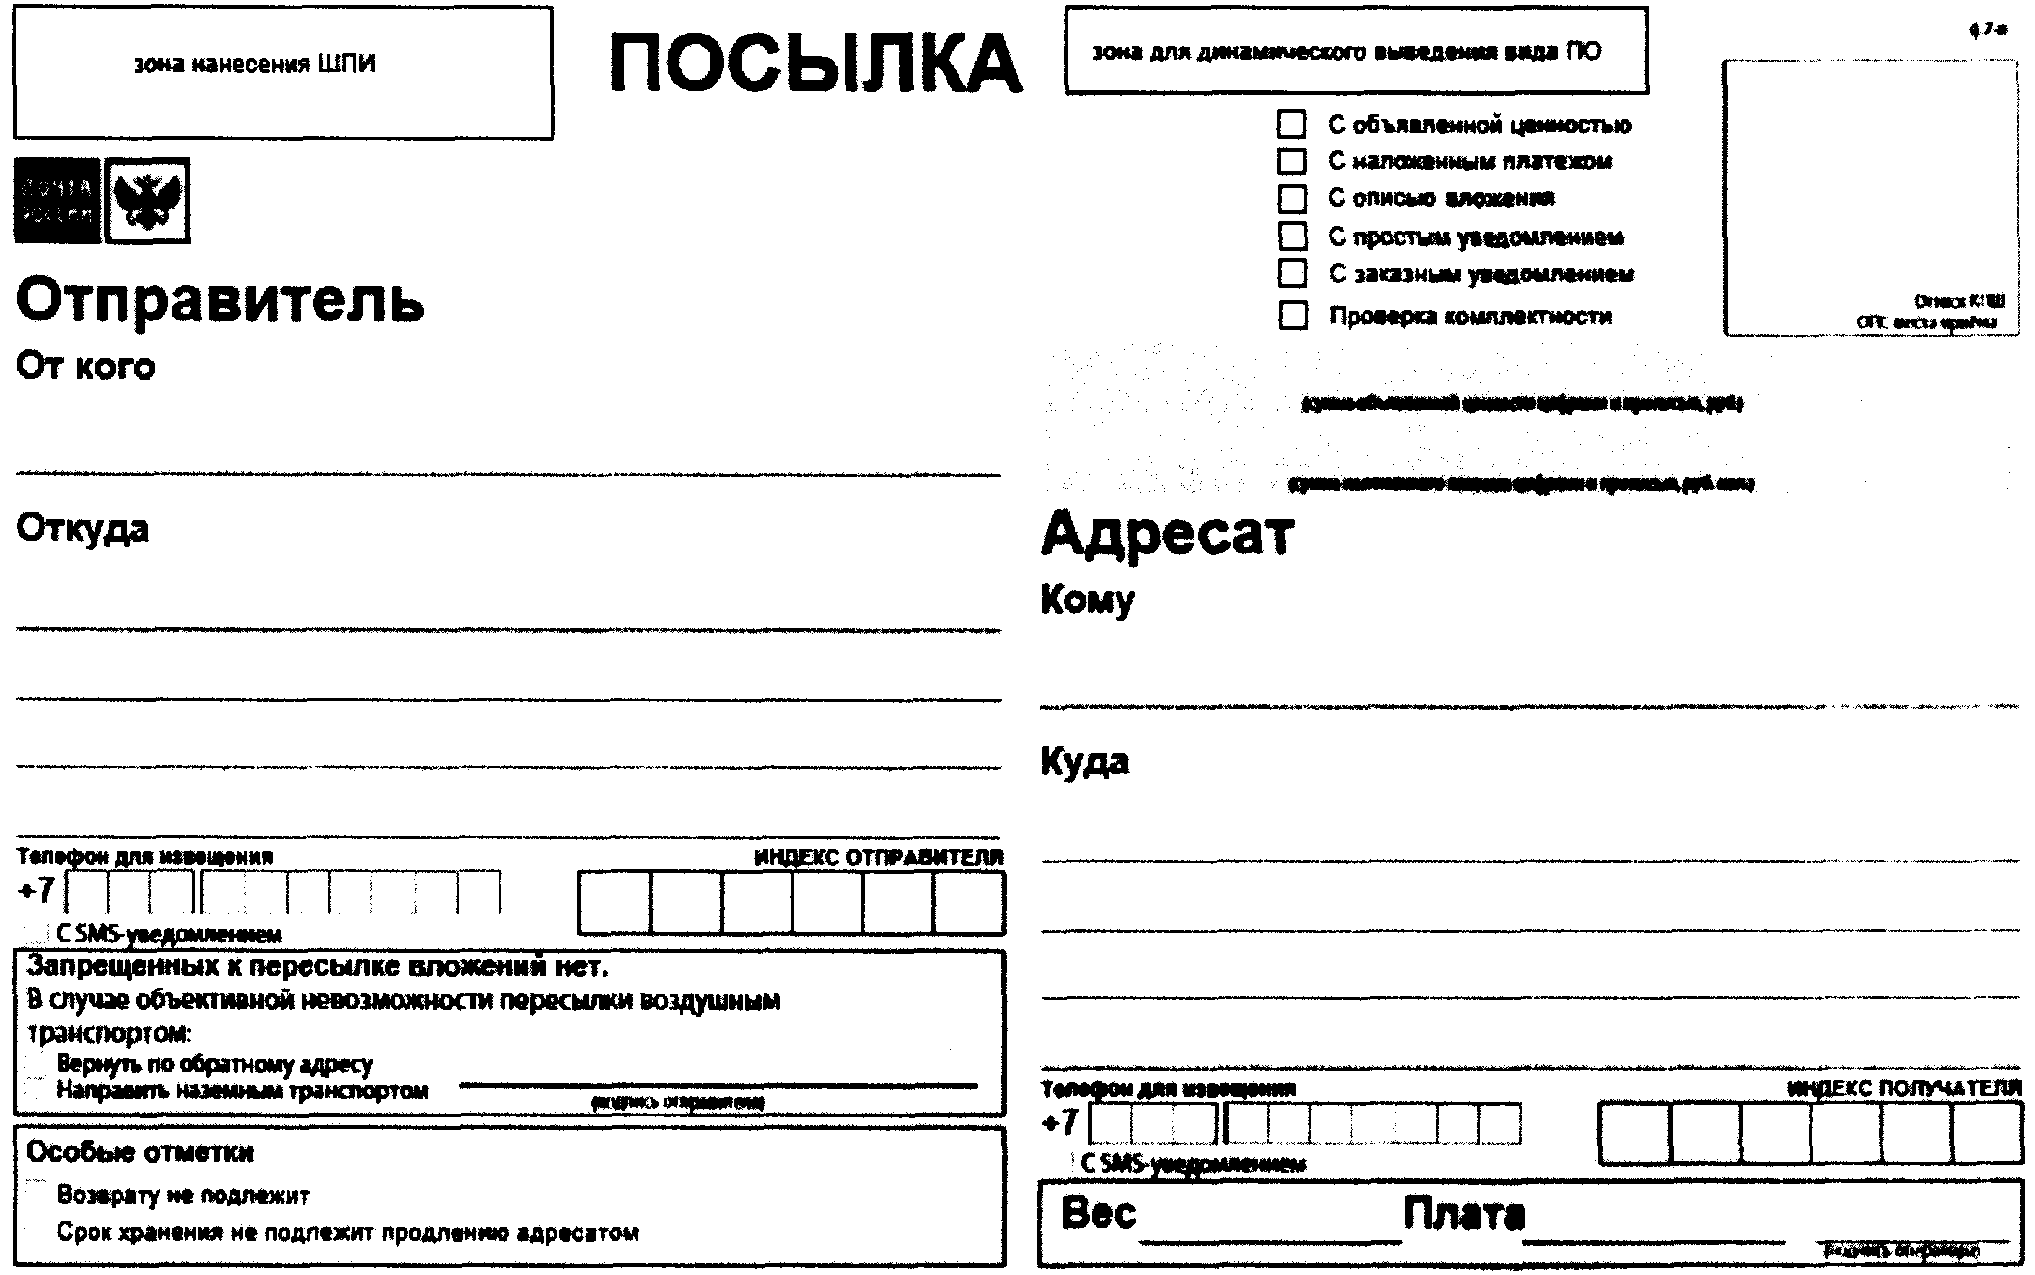 Образец Бланка отправления посылки почты России